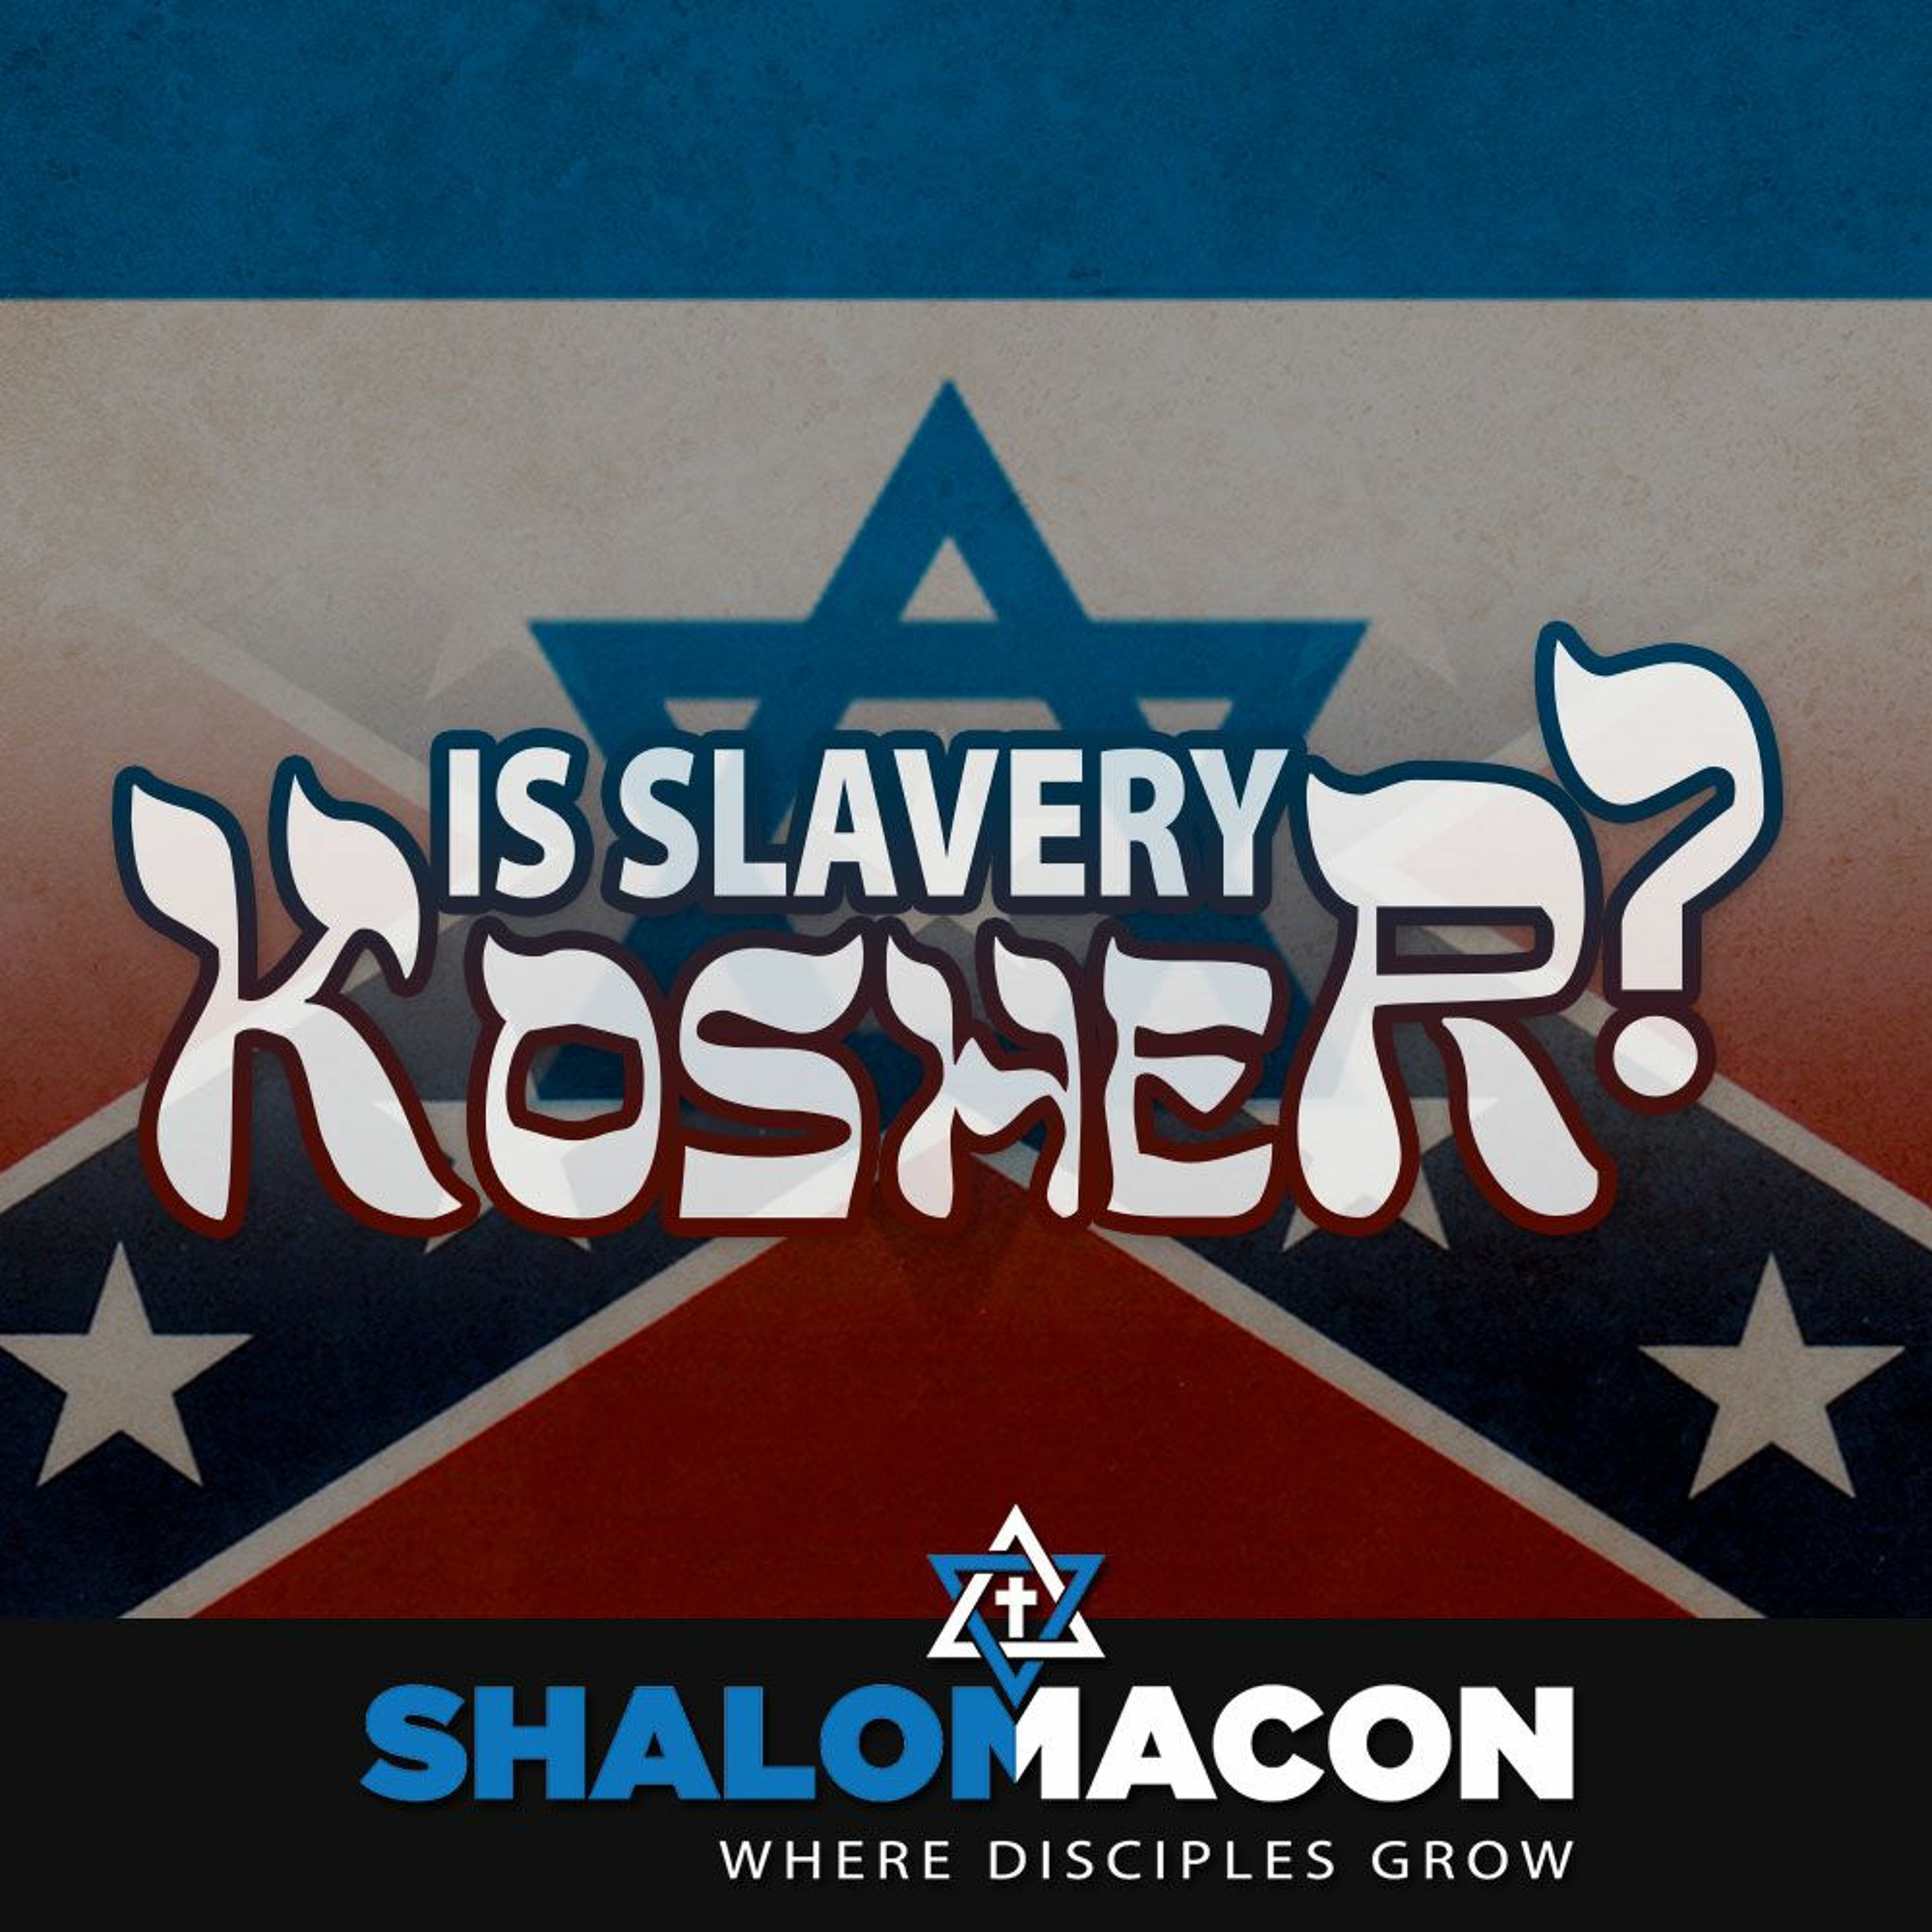 Is Slavery Kosher?